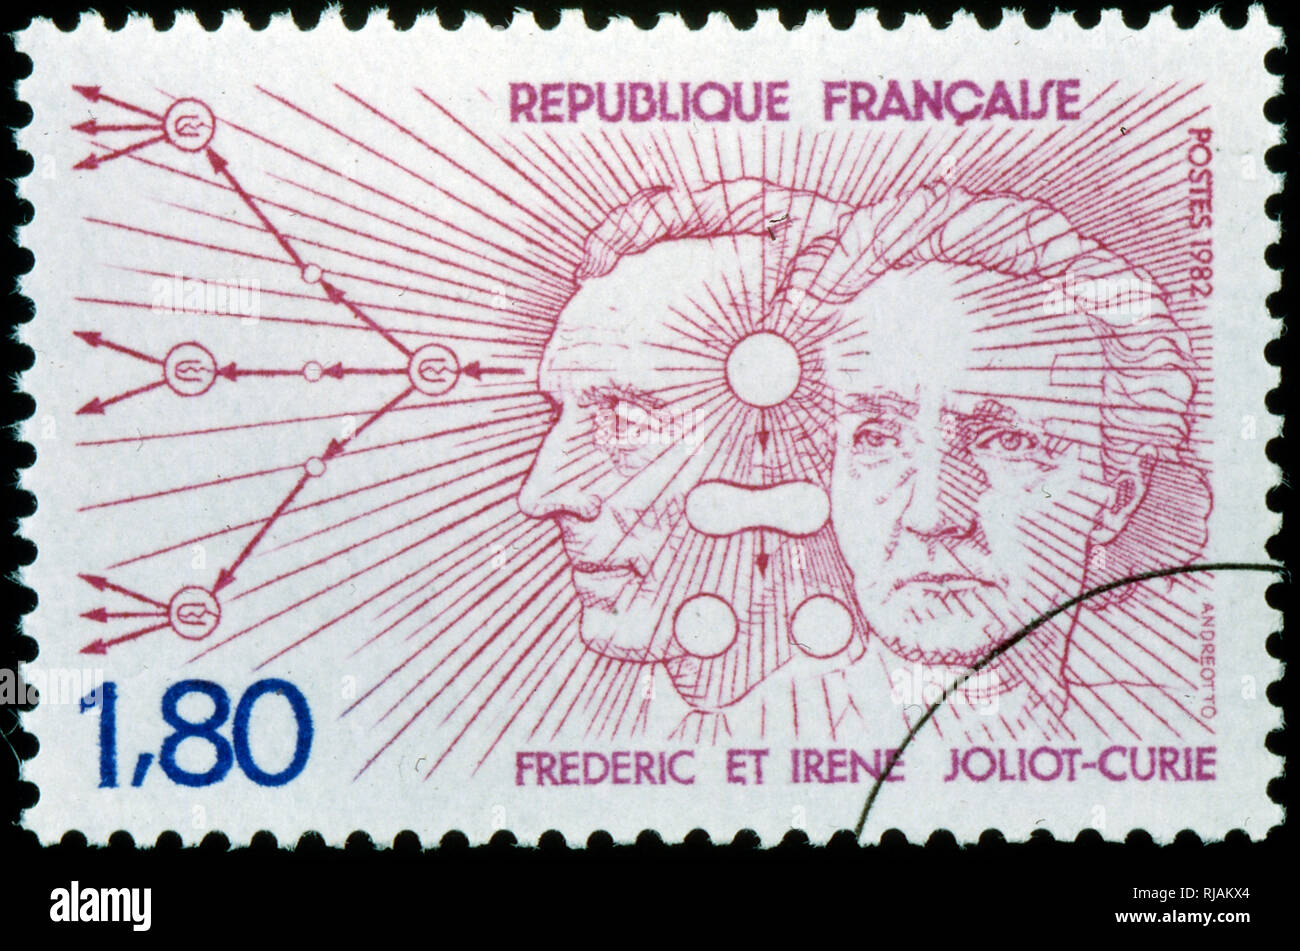 Il francese francobollo celebra Irene Joliot-Curie e Frederic Joliot-Curie. Essi sono stati insigniti del Premio Nobel per la Chimica nel 1935 per la loro scoperta della radioattività artificiale. Foto Stock